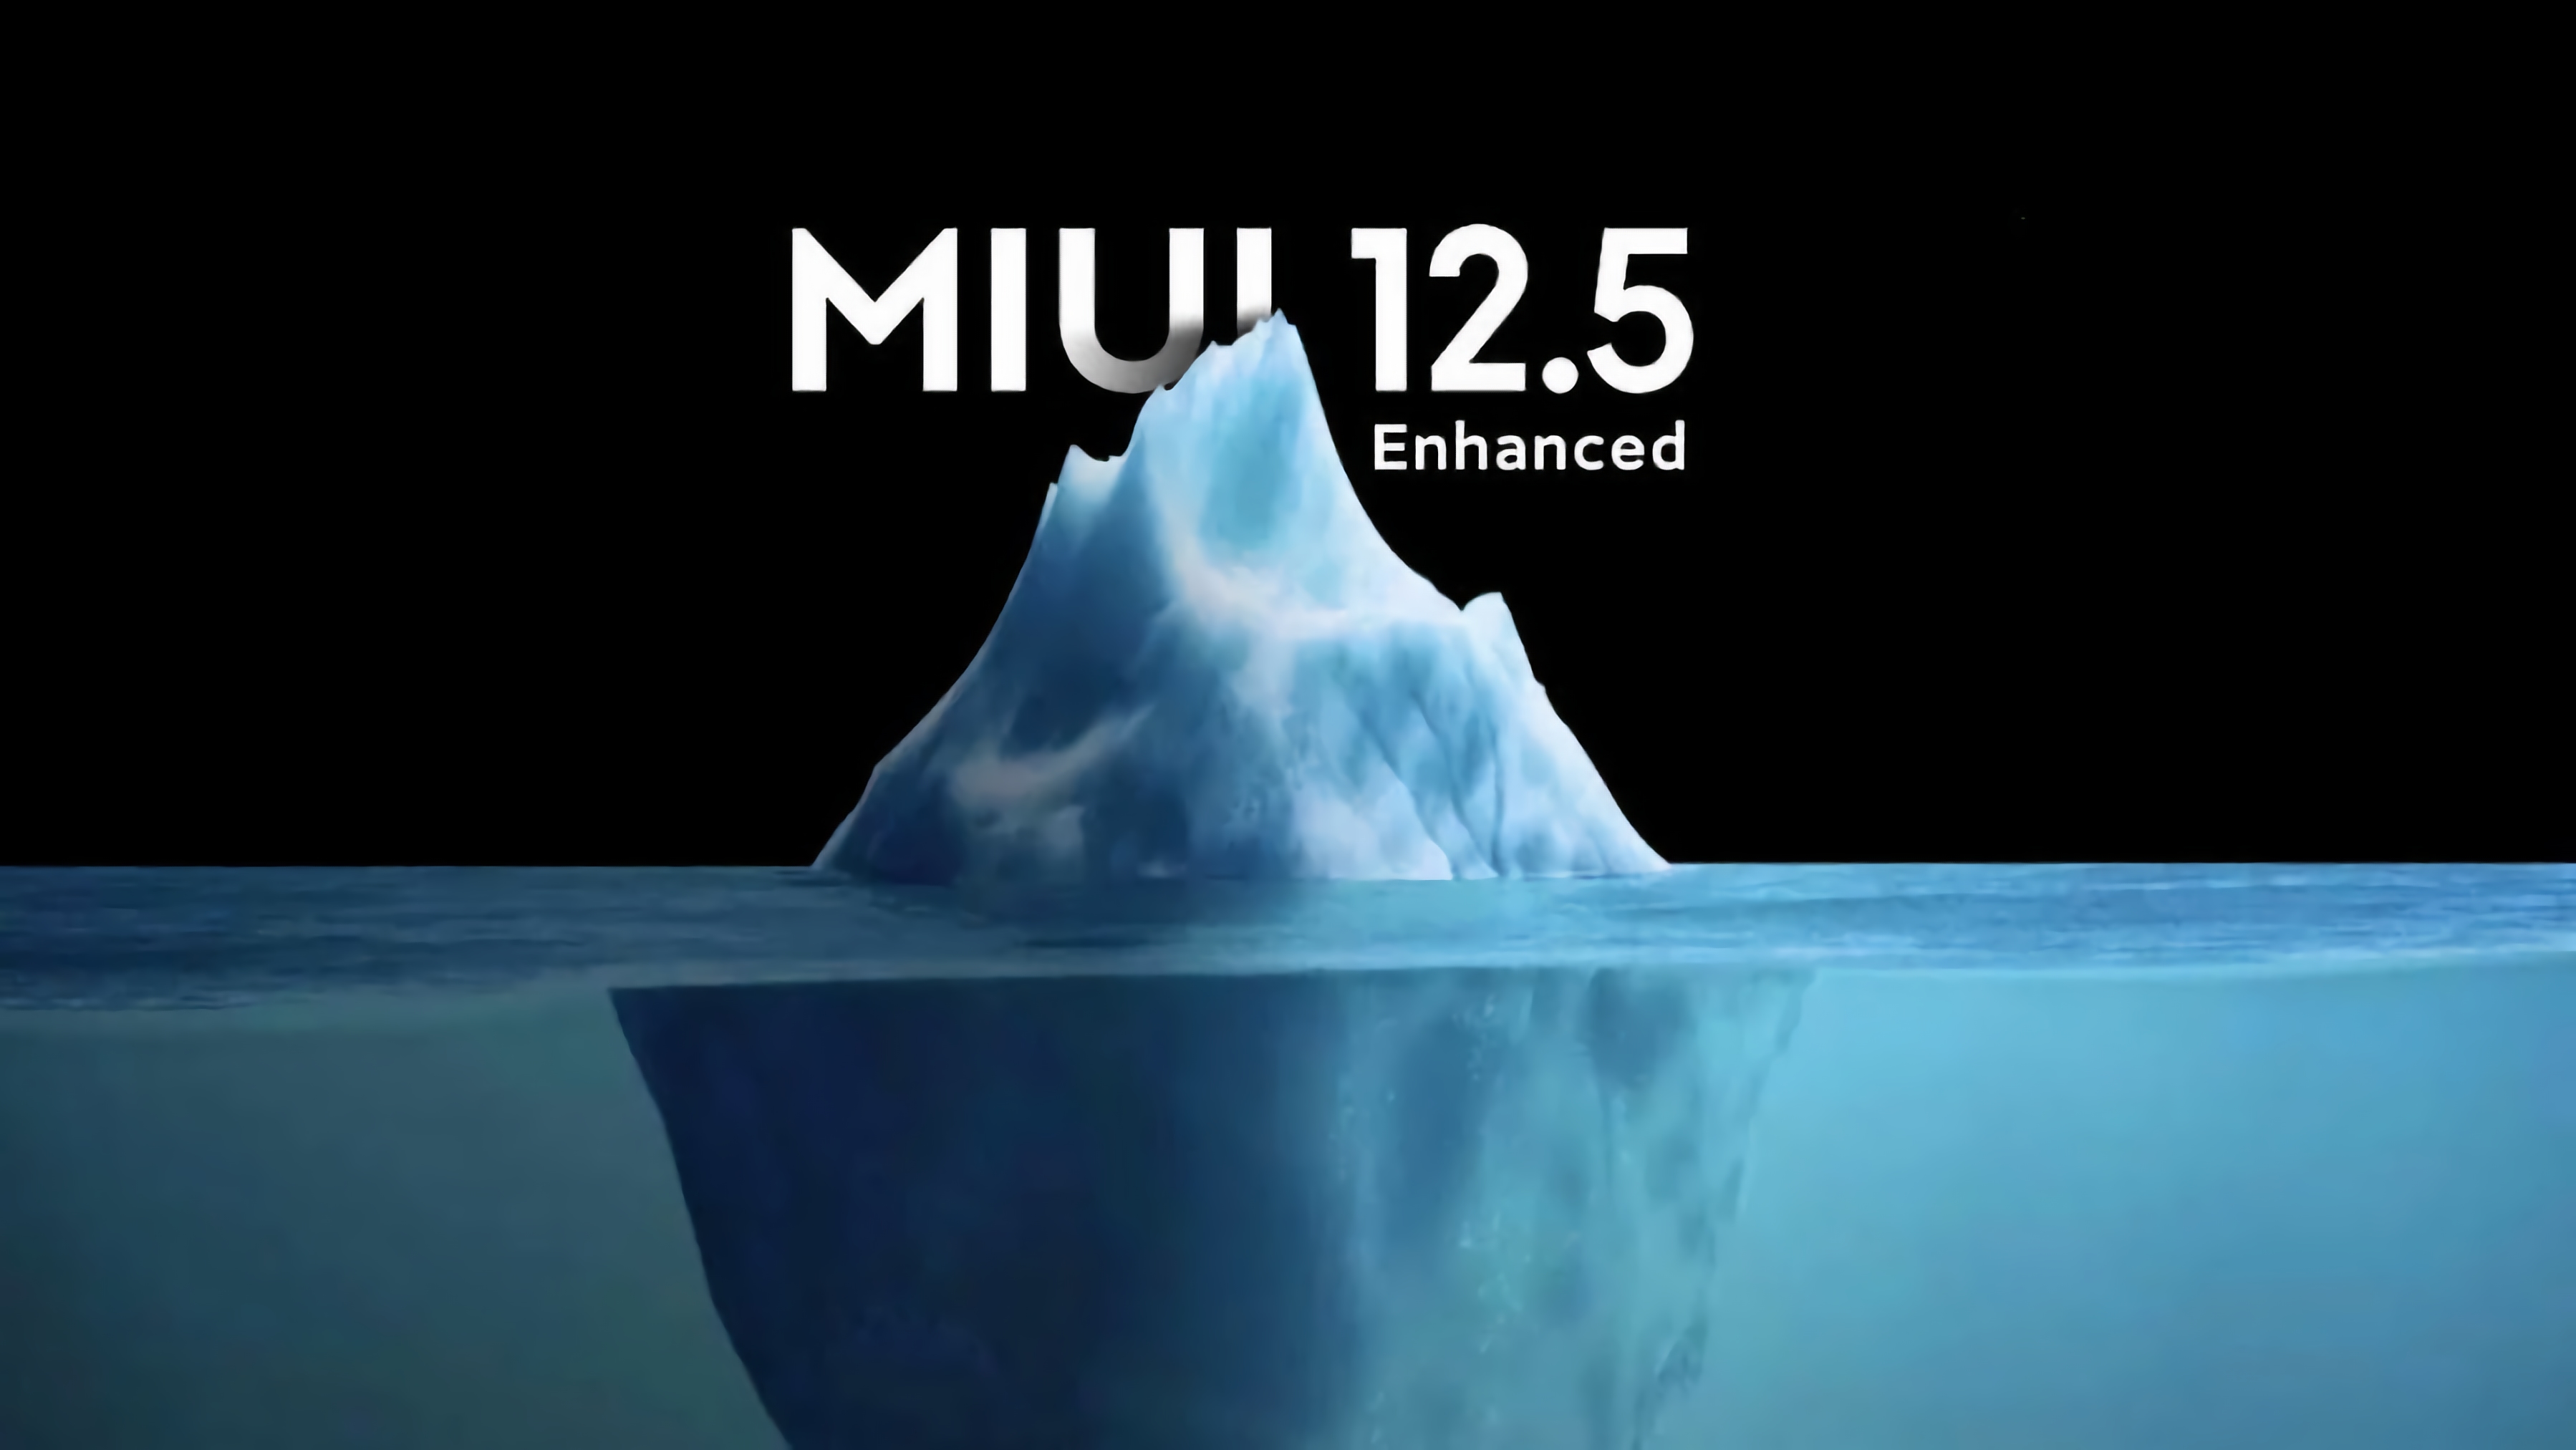 Les smartphones Redmi qui ne recevront pas la mise à jour MIUI 12.5 Enhanced Edition ont été révélés